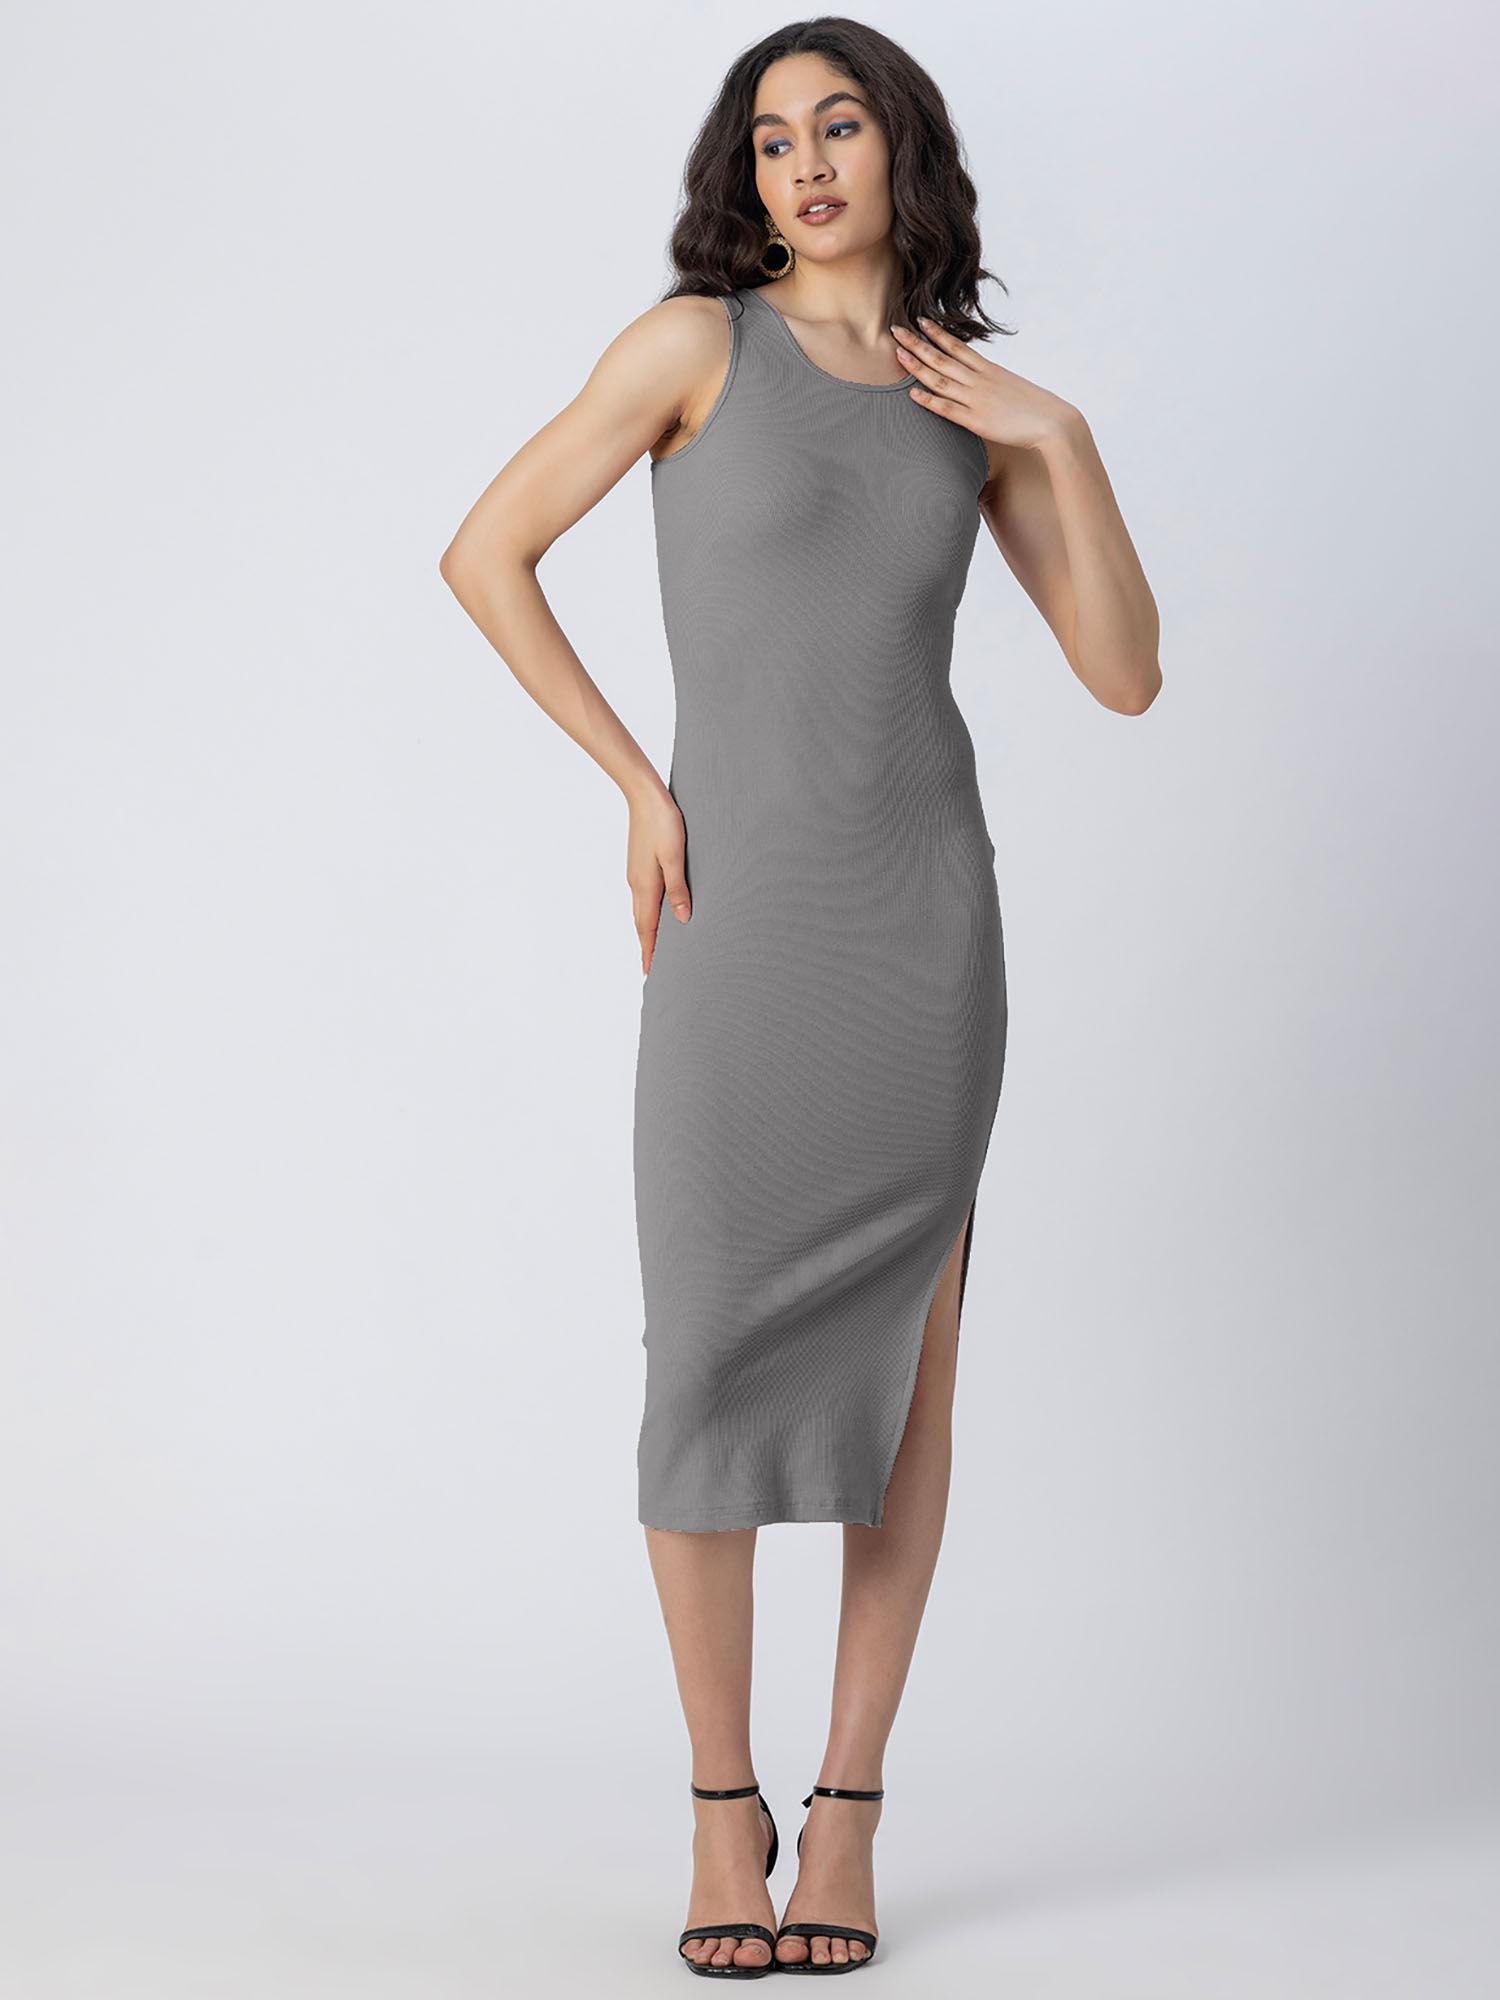 bodycon knit grey dress for women